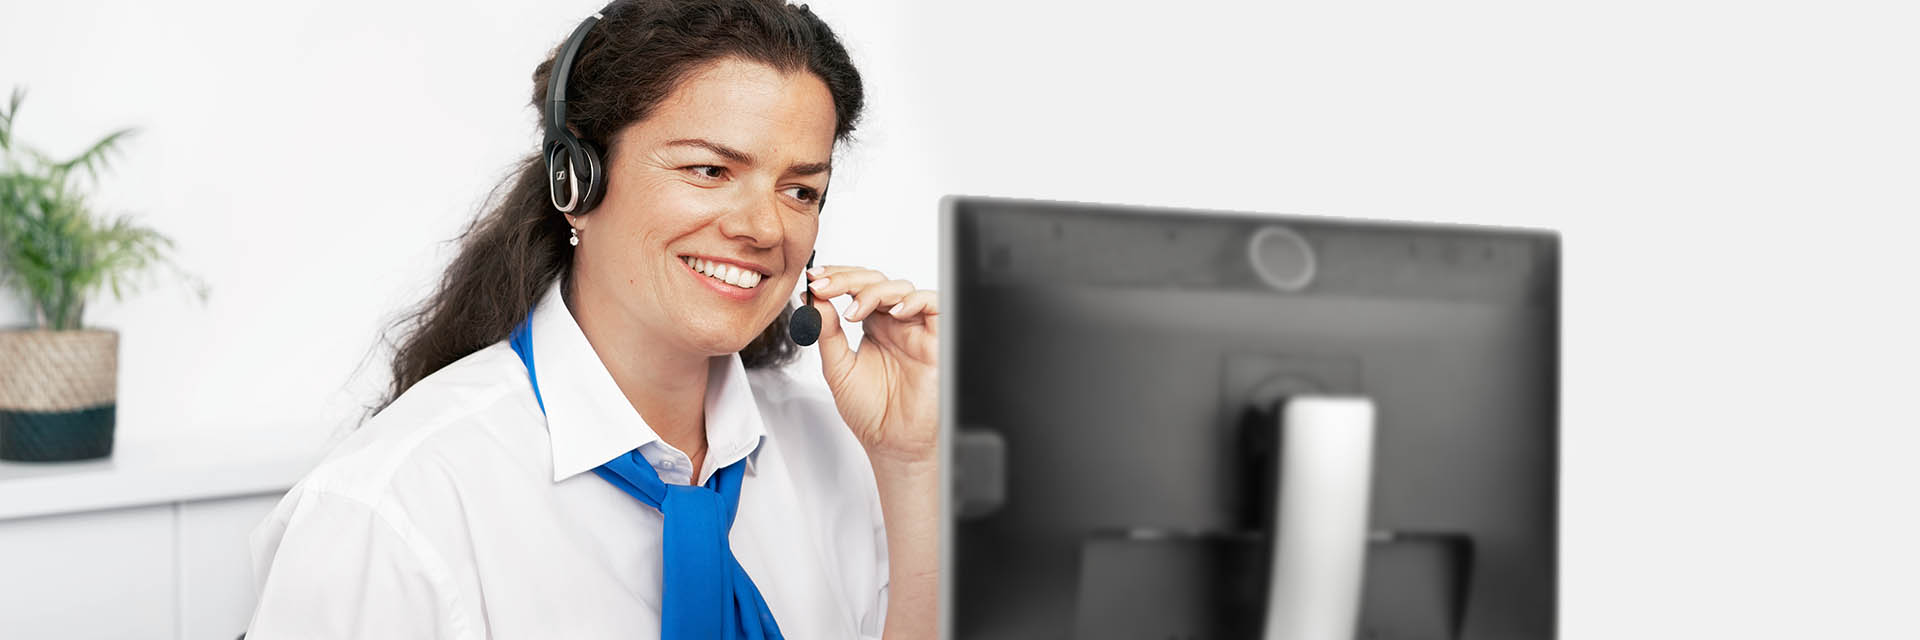 Immagine di una donna in un call center che rispondere a una chiamata con le cuffie accese